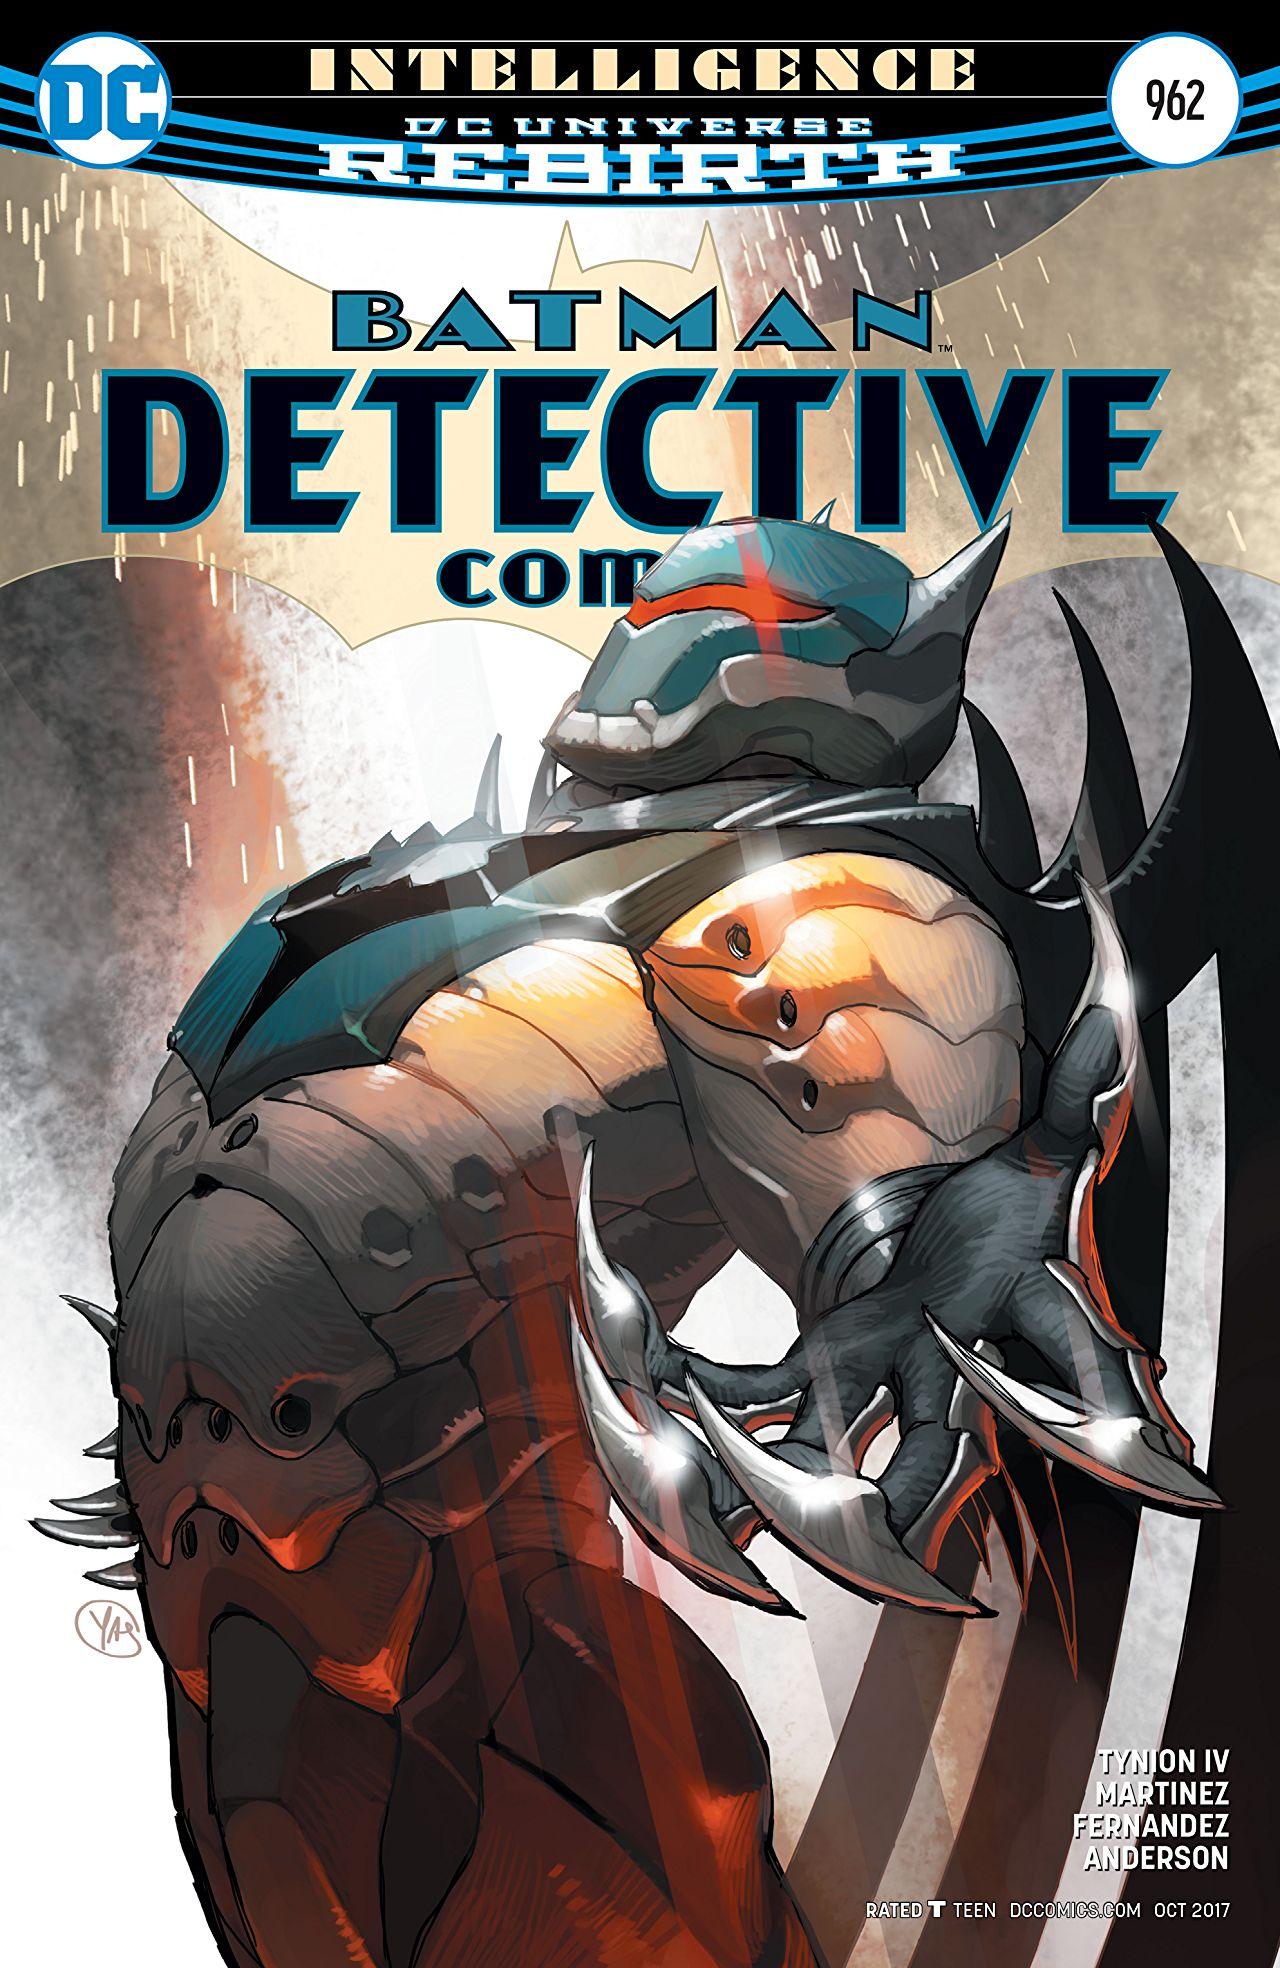 Detective Comics Vol. 1 #962